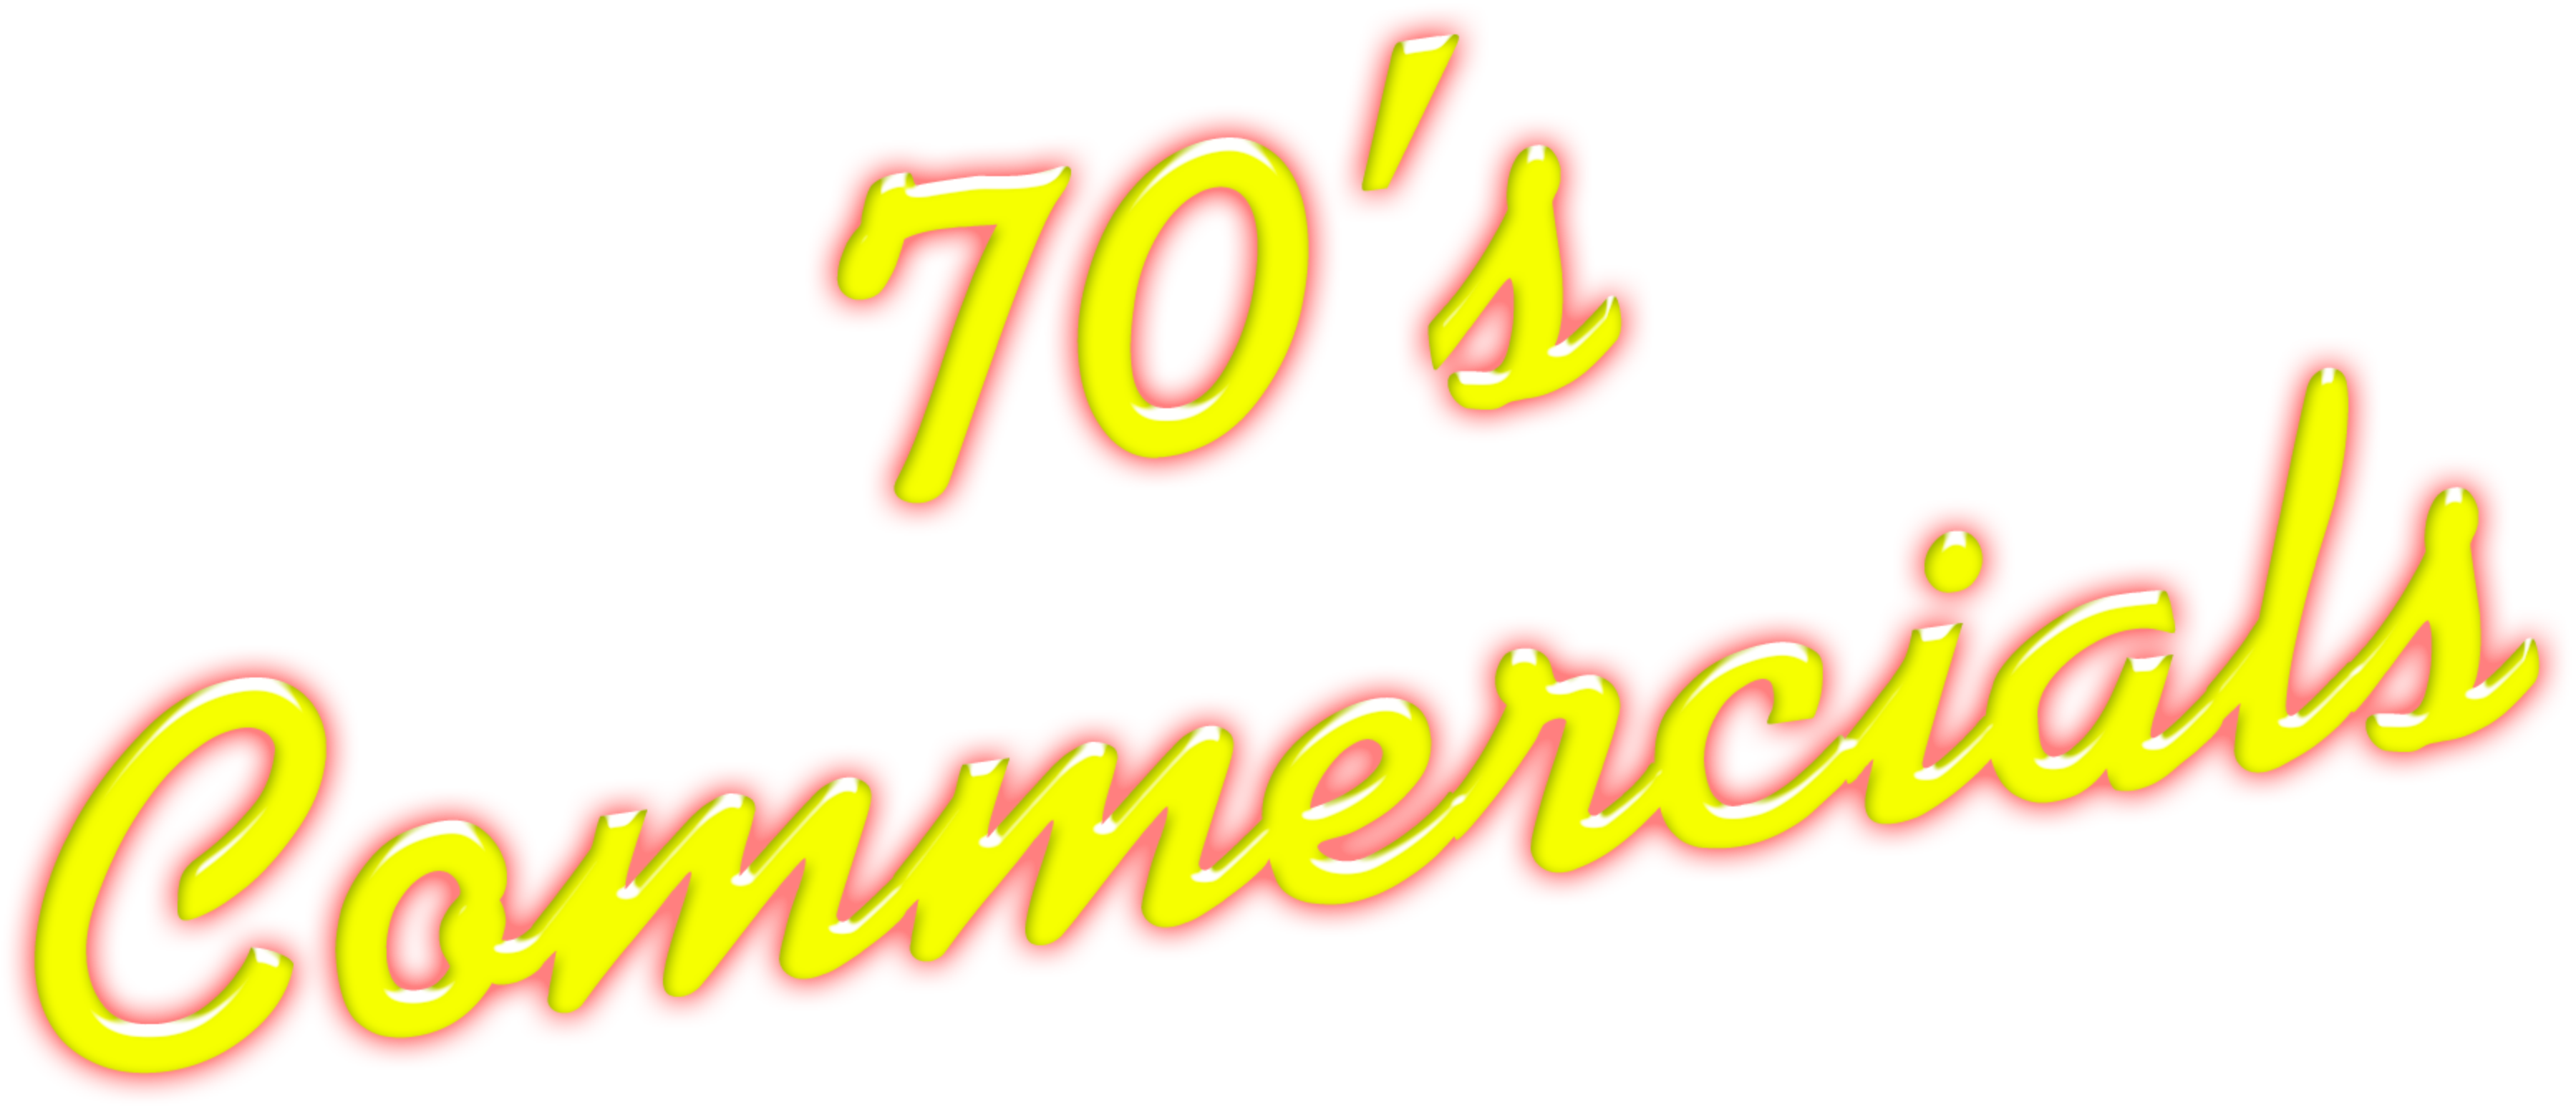 70's Commercials Disc 2